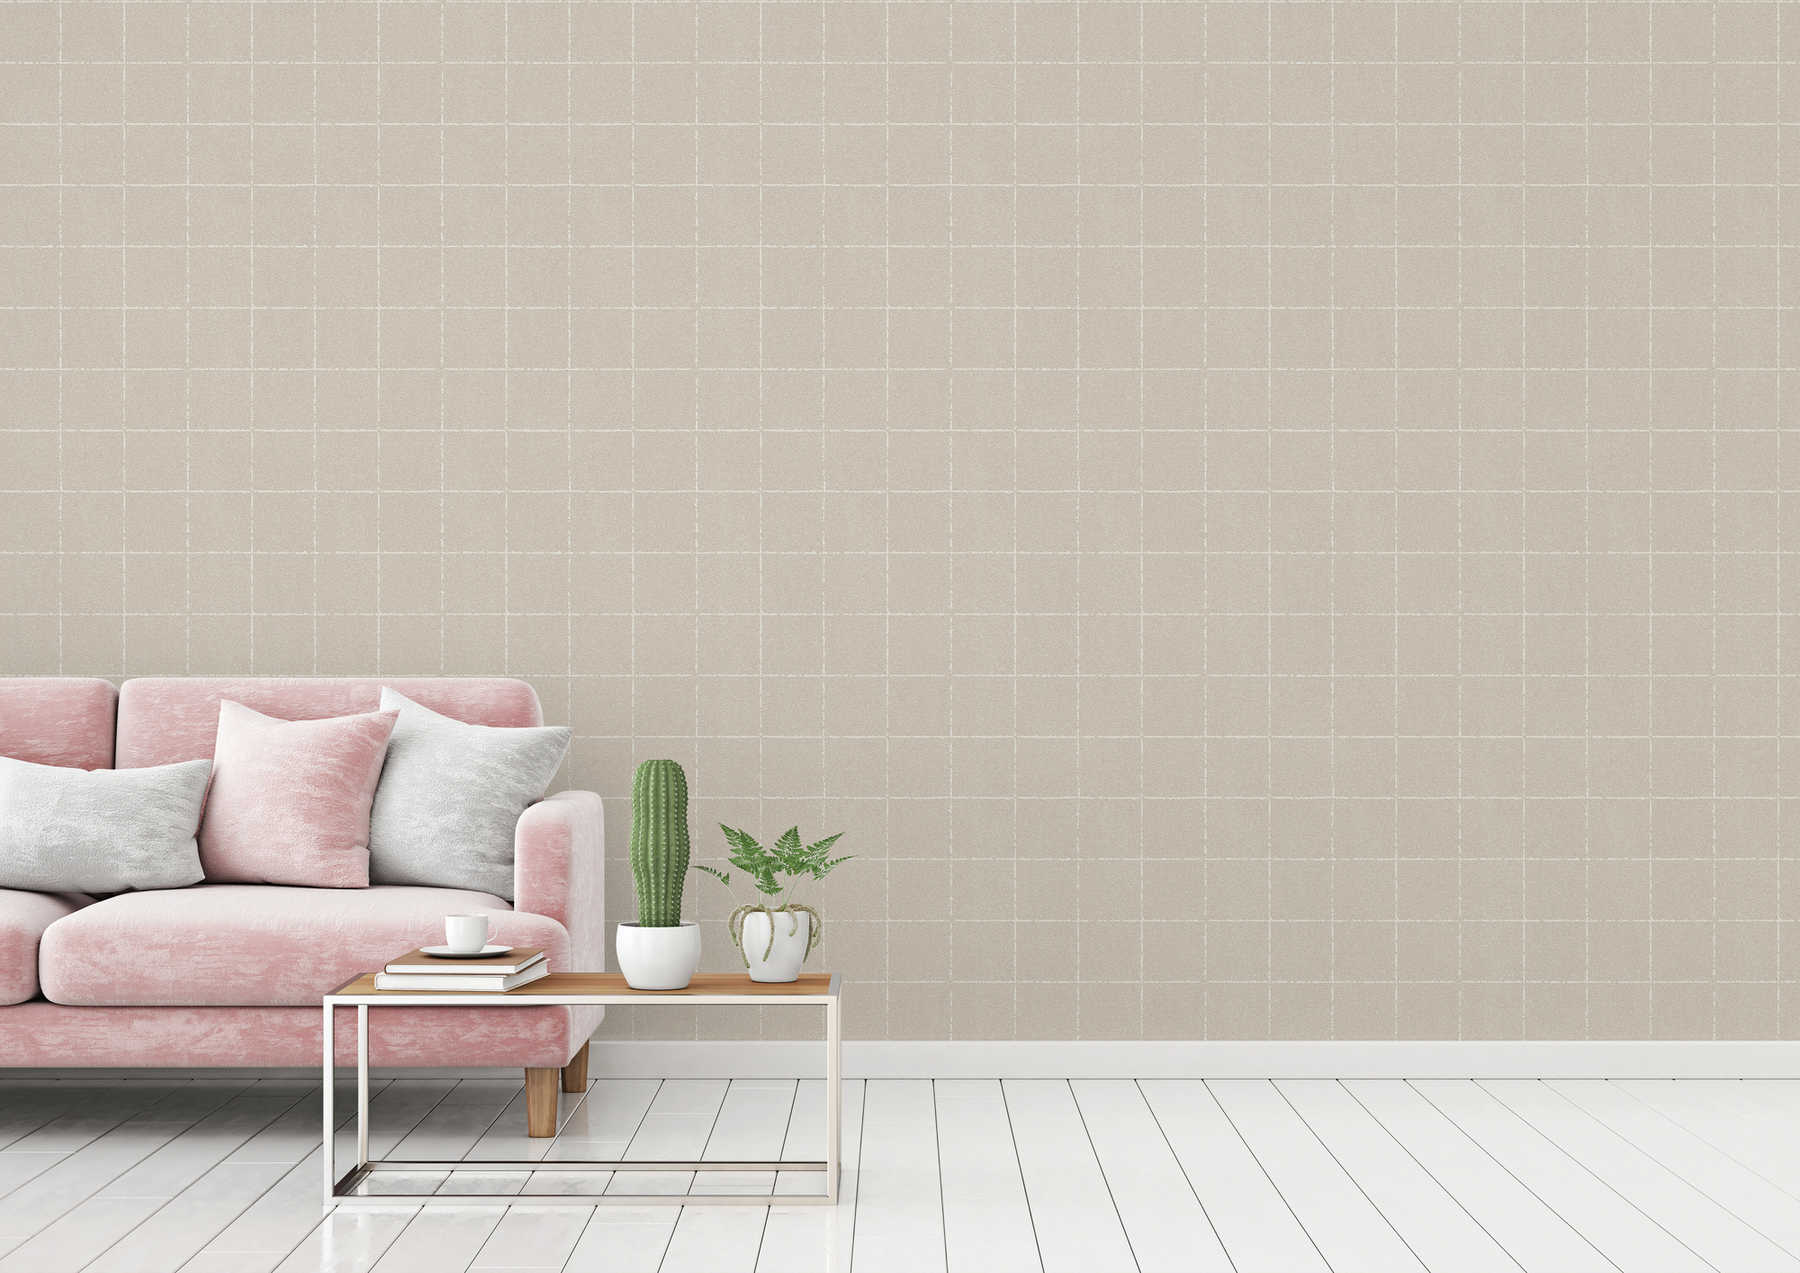             Checkered wallpaper in textile optics, textured - beige, cream, brown
        